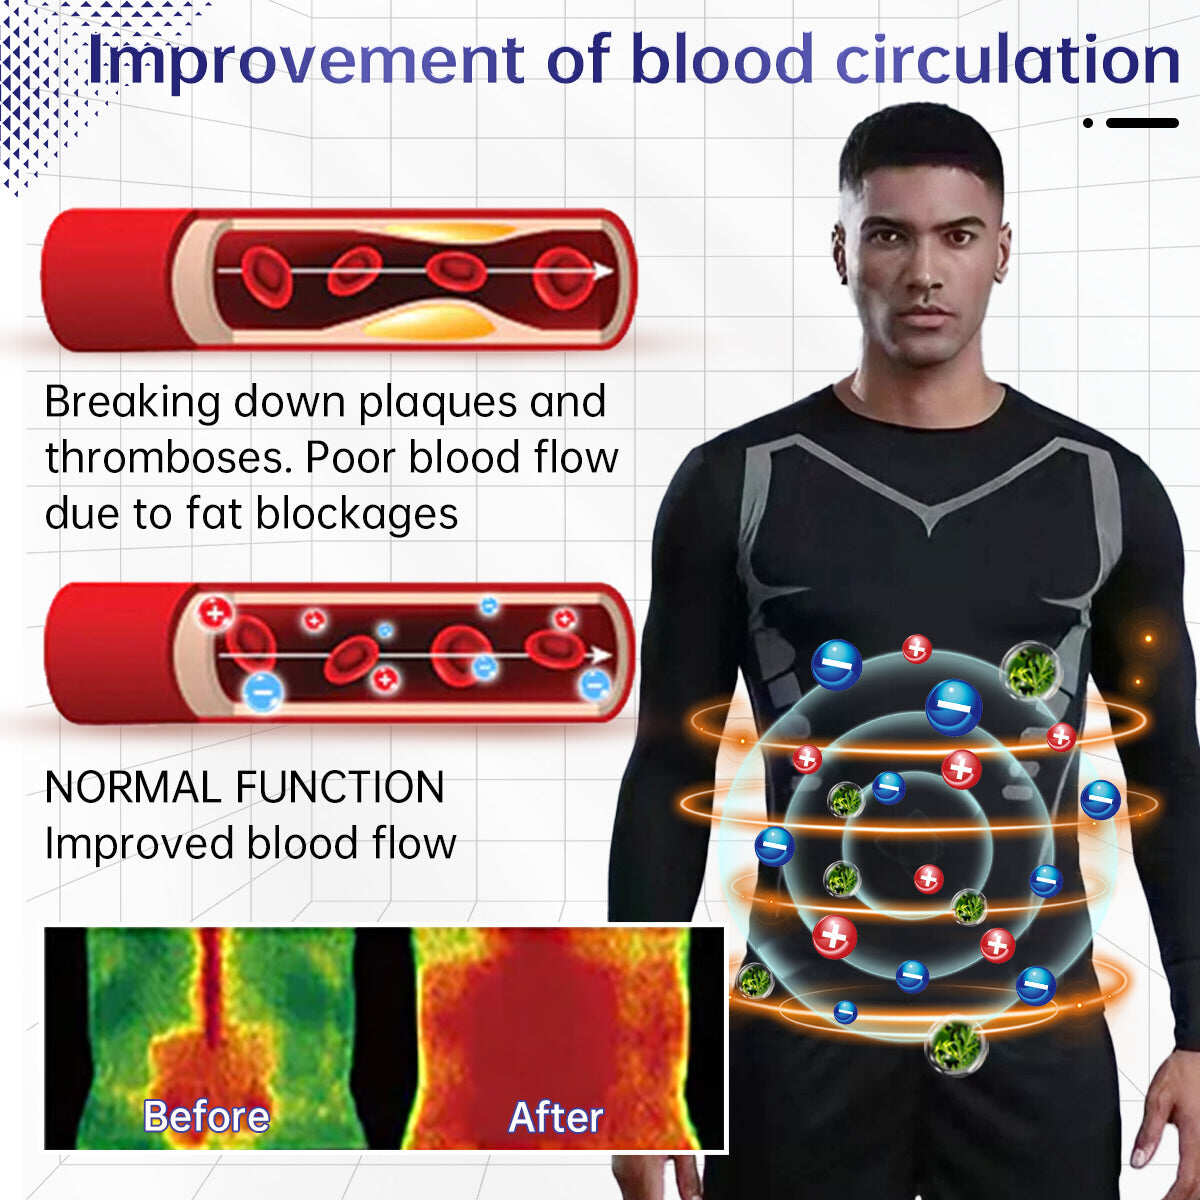 Roupa íntima magnética de turmalina infravermelha Sugoola™ para homens